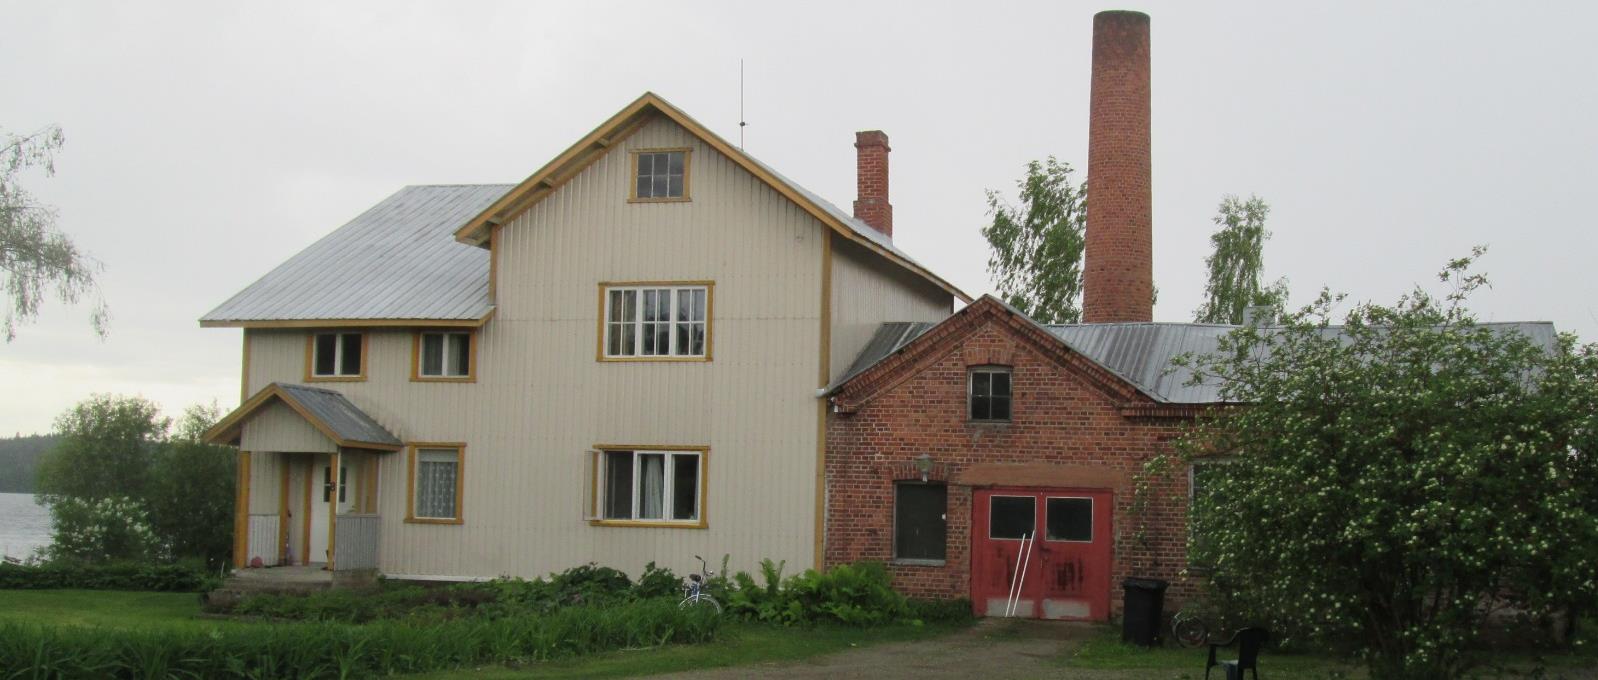 Kunnanlääkärin talo, 1910-luku - 1980-luvulle saakka, jonka jälkeen